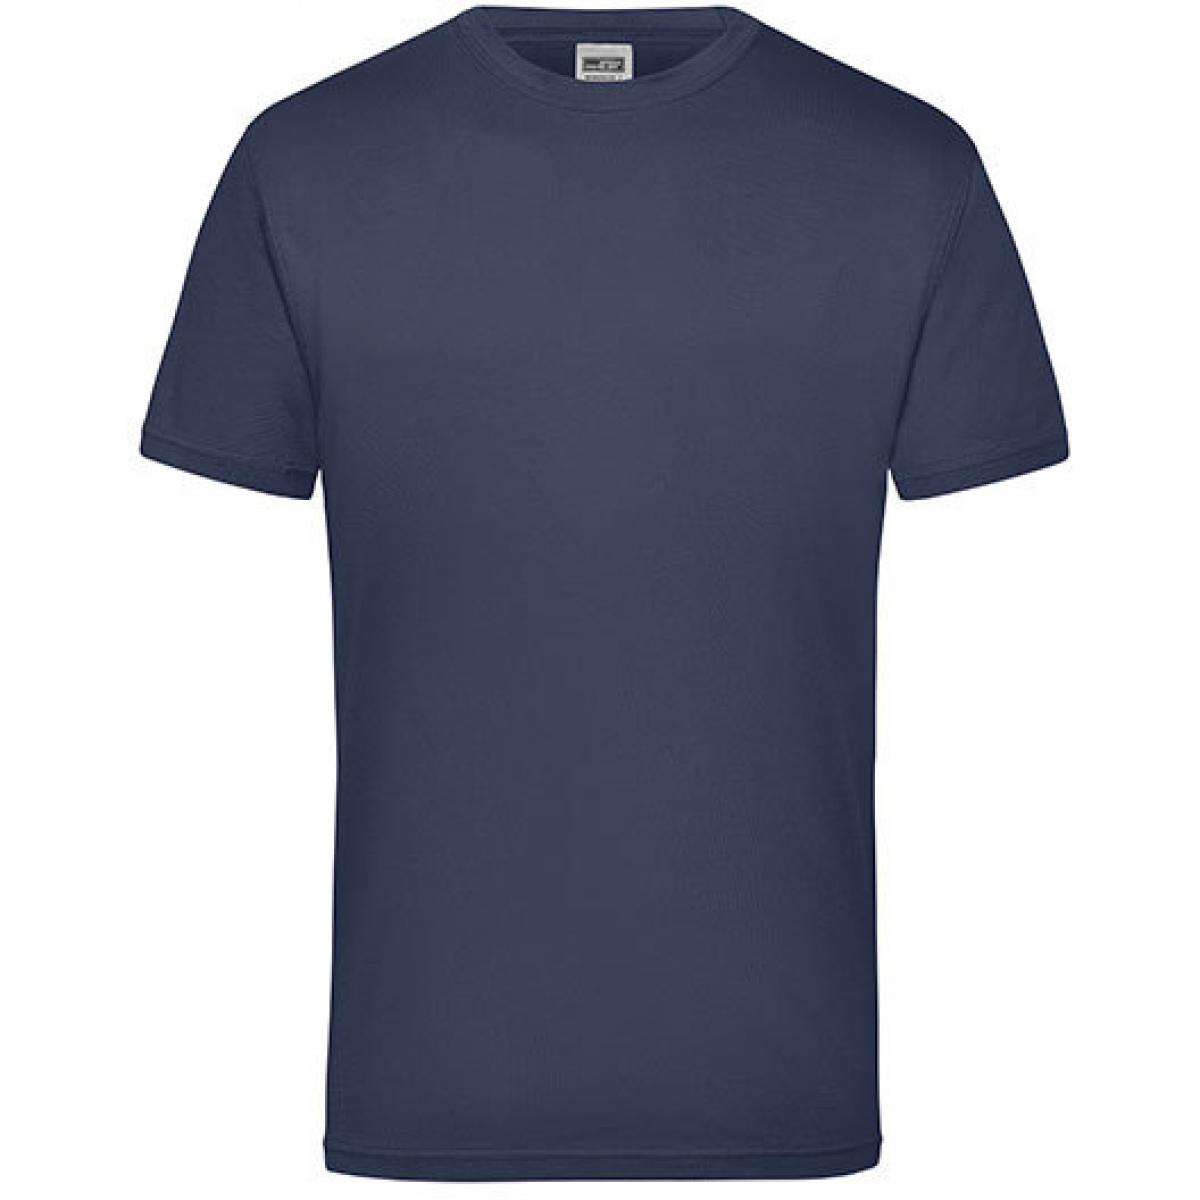 Hersteller: James+Nicholson Herstellernummer: JN 800 Artikelbezeichnung: Workwear Herren T-Shirt - waschbar bis 60 °C Farbe: Navy